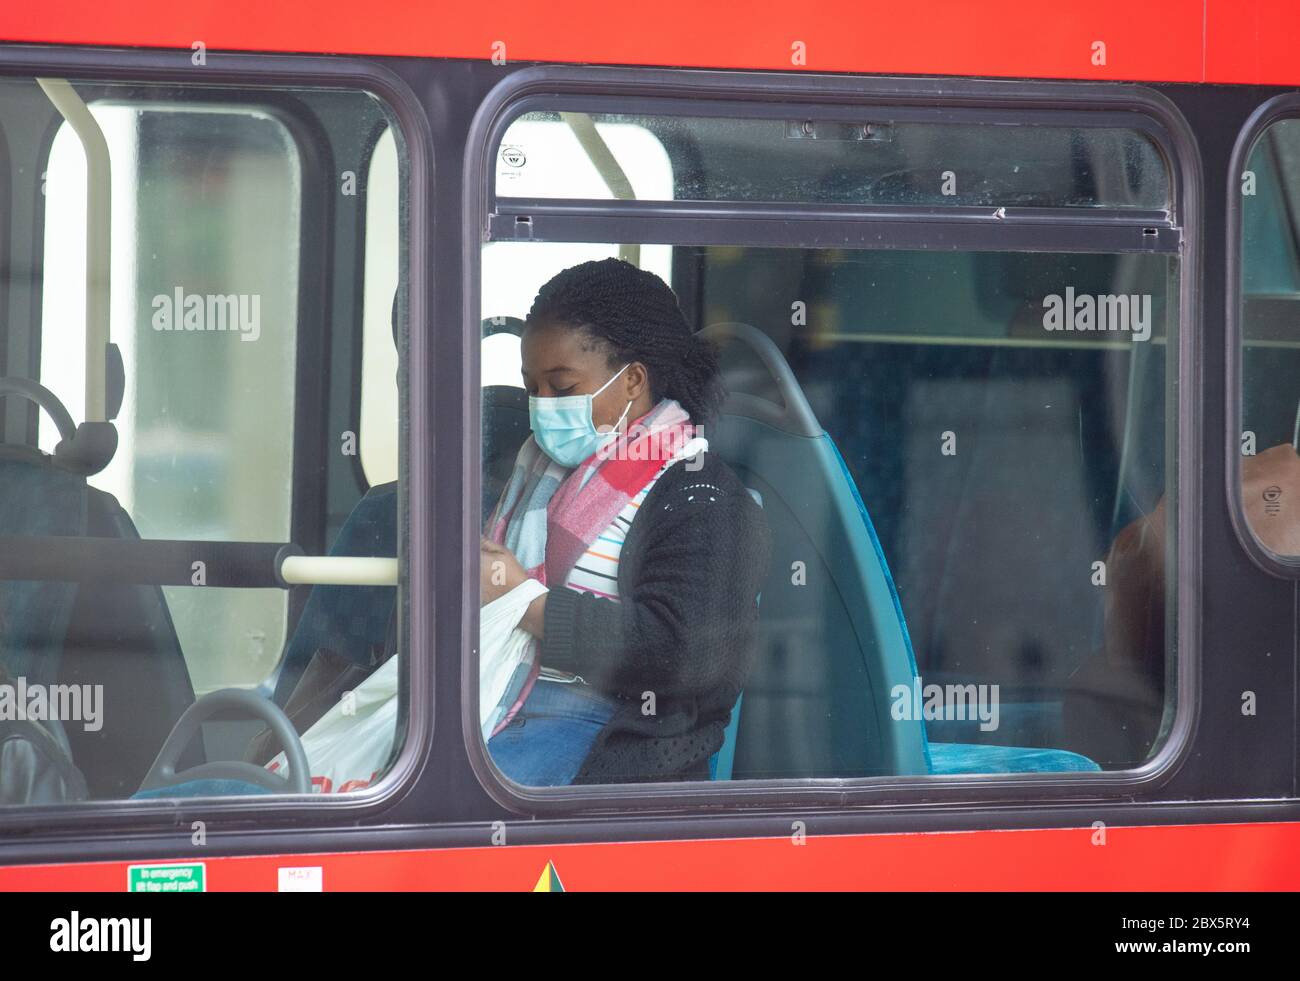 Un passeggero che indossa una maschera protettiva su un autobus nel centro di Londra, dopo l'annuncio che indossare una copertura facciale sarà obbligatorio per i passeggeri sui trasporti pubblici in Inghilterra a partire da giugno 15. Foto Stock